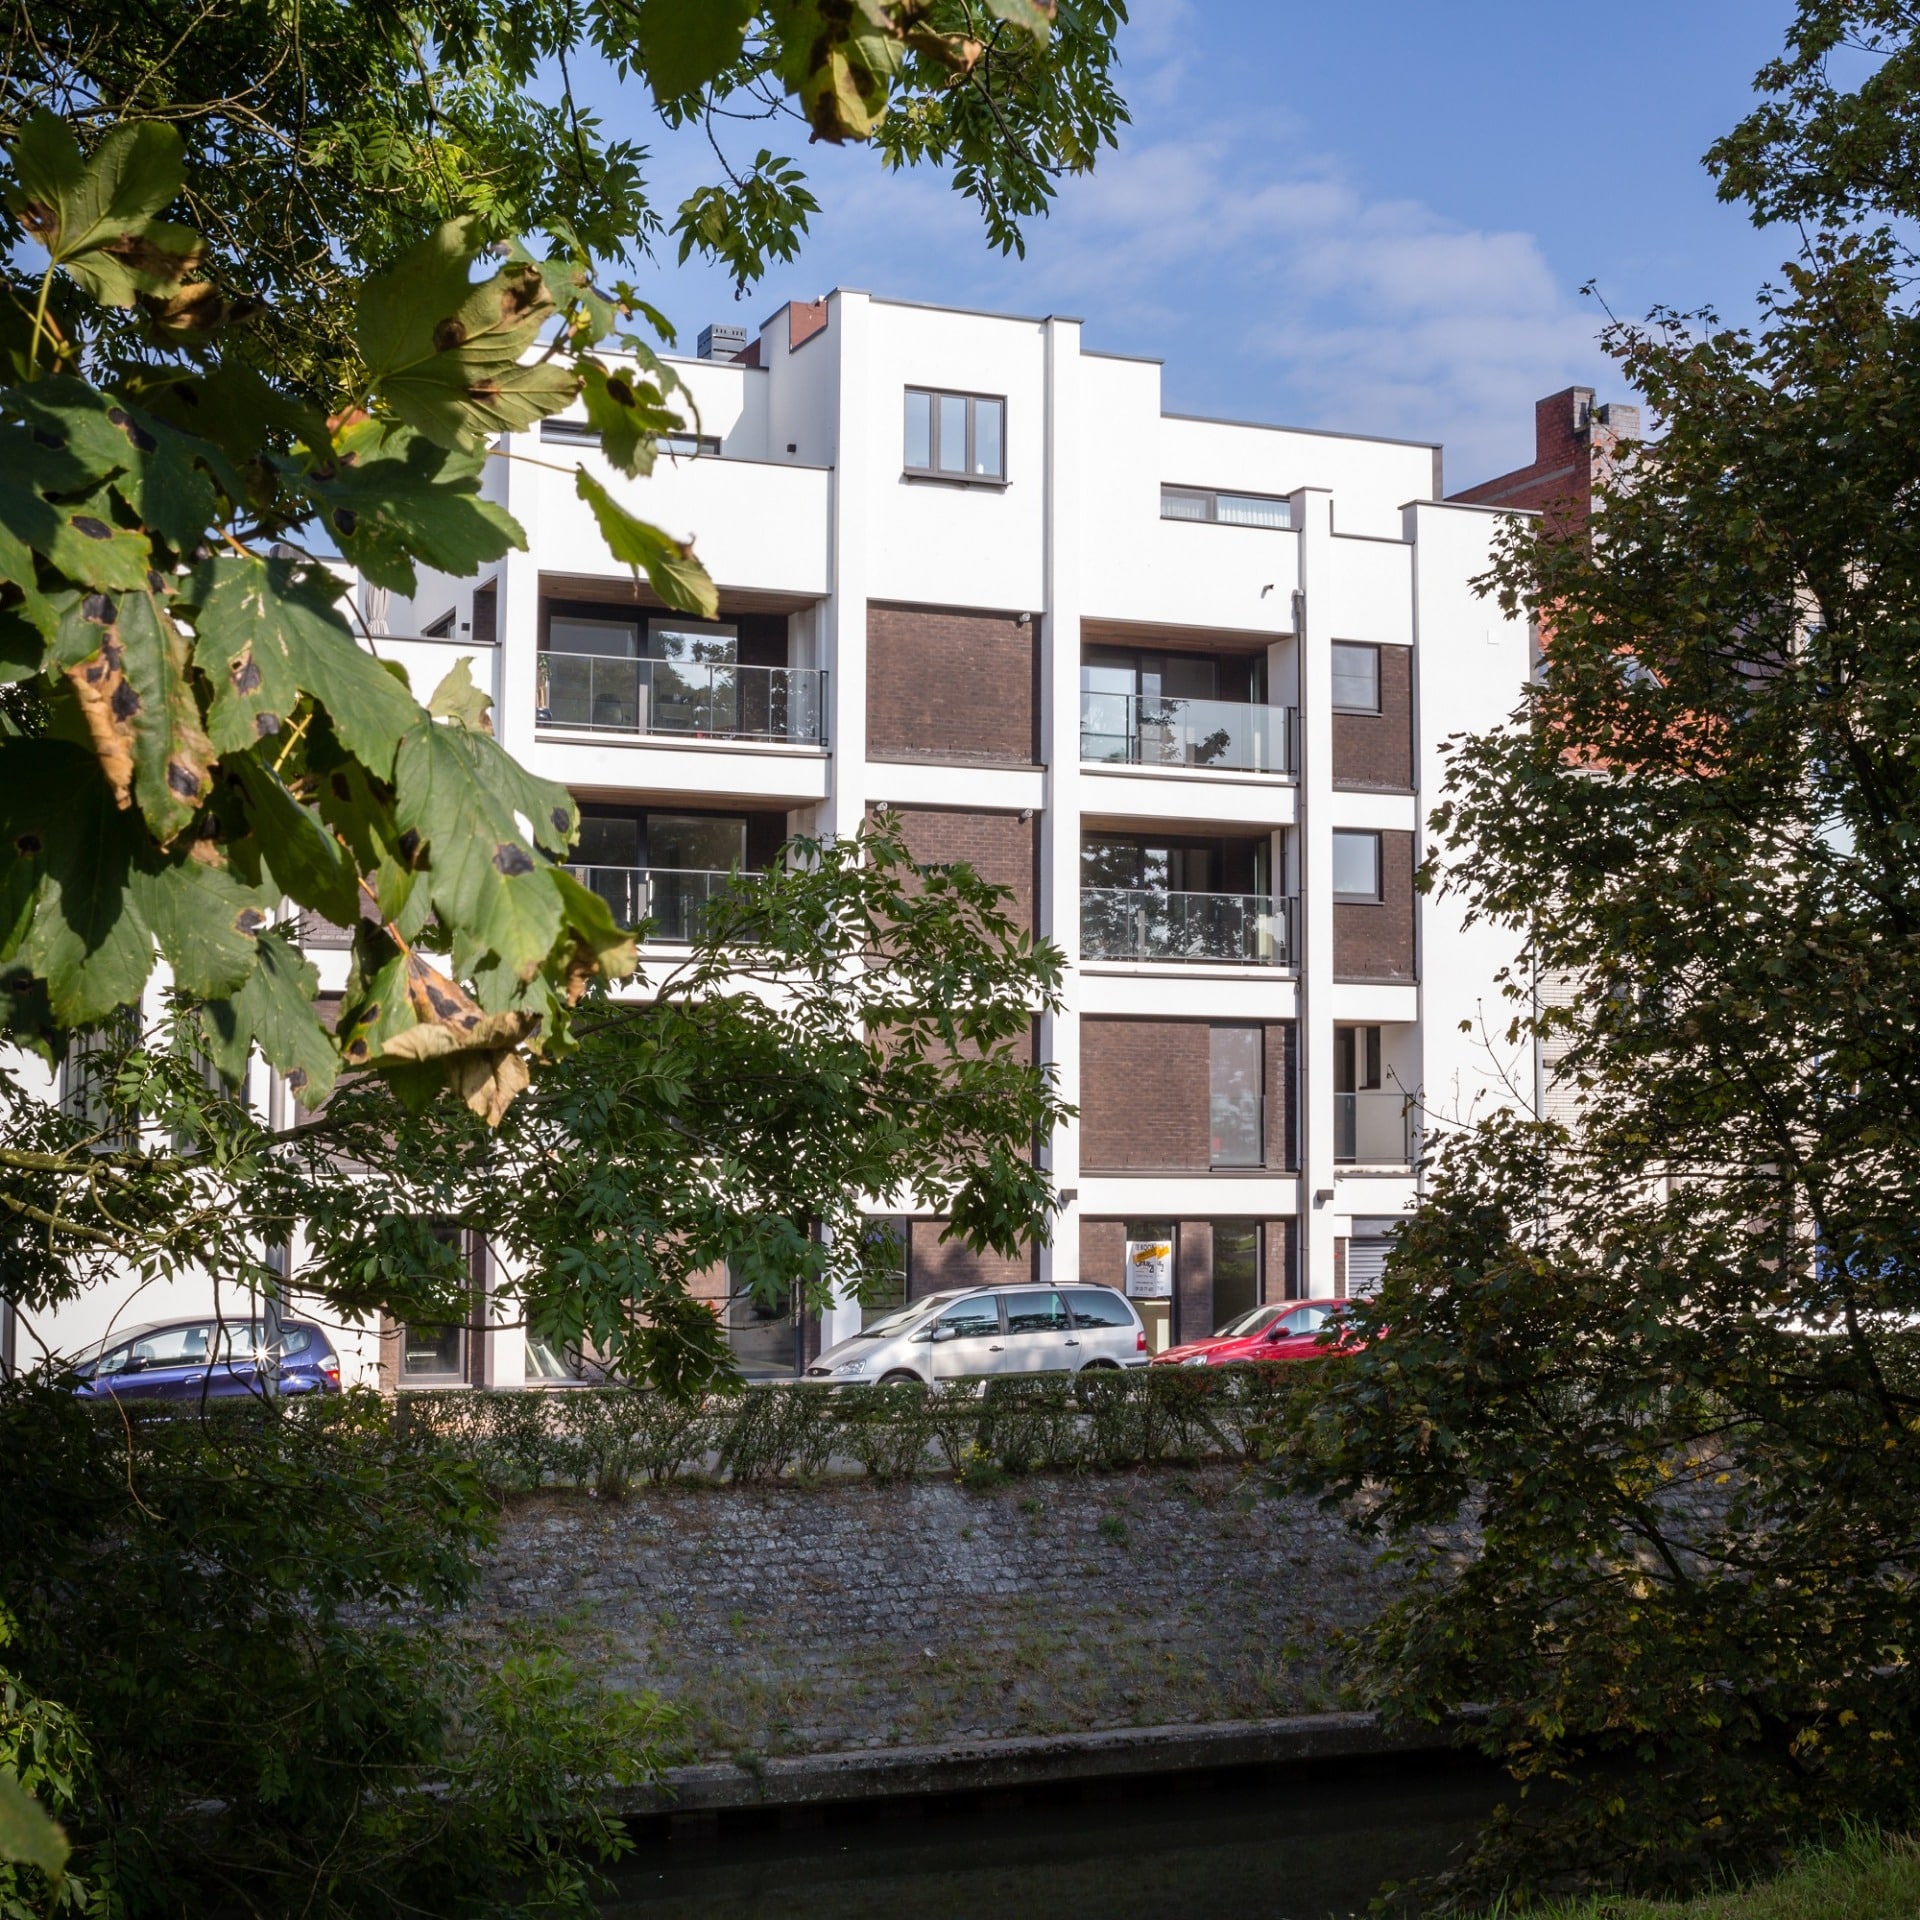 River view - 5 appartementen - Gent | Realisaties - Strak bouw bv